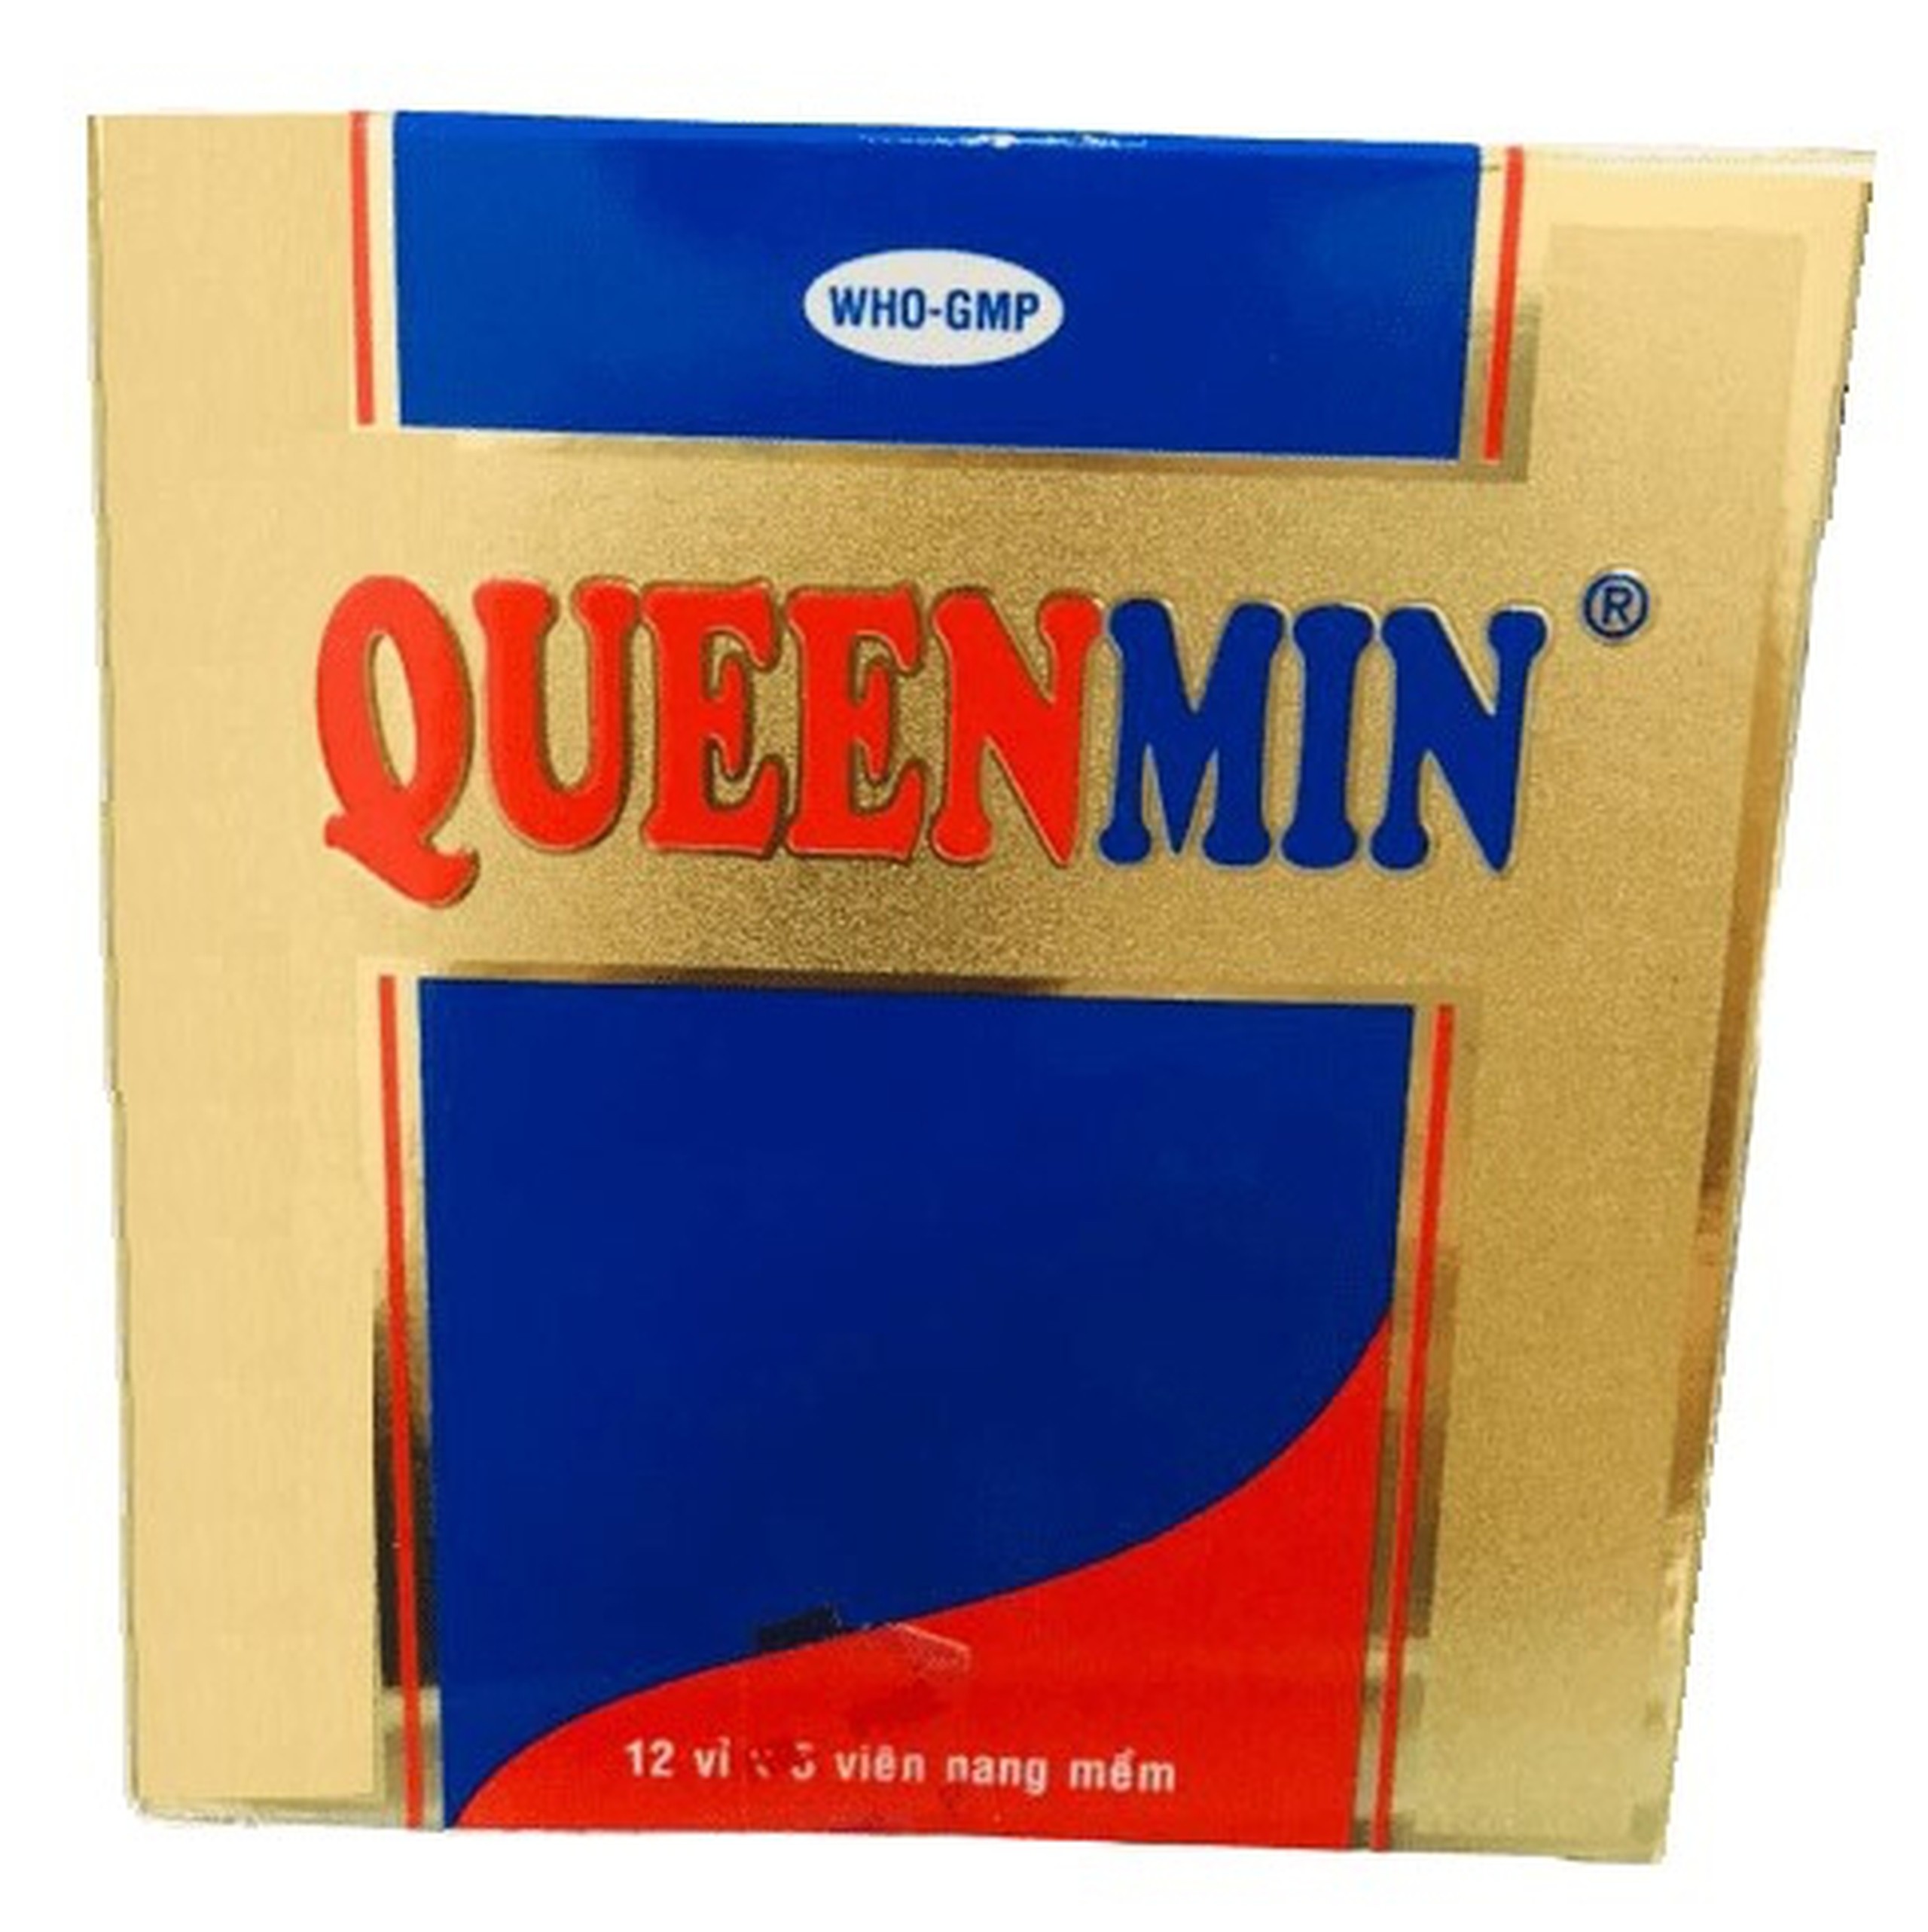 Thuốc Queenmin Phil bổ sung vitamin và khoáng chất (12 vỉ x 5 viên)